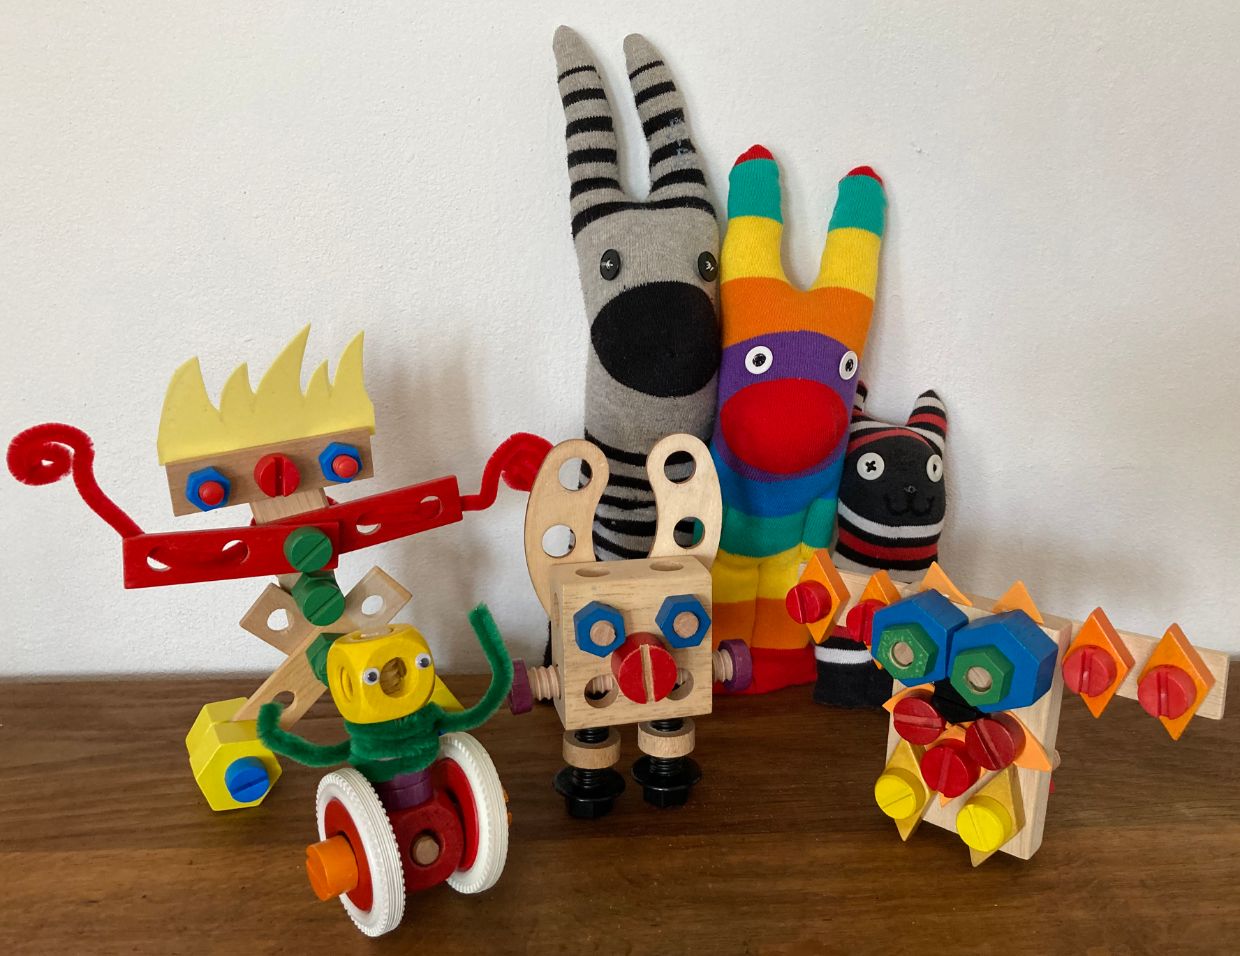 Puppen, Plüsch und Pionierinnengeist -
Frauen im Spielwarendesign , Basler Ferienpass: Selbstgebautes Spielzeug